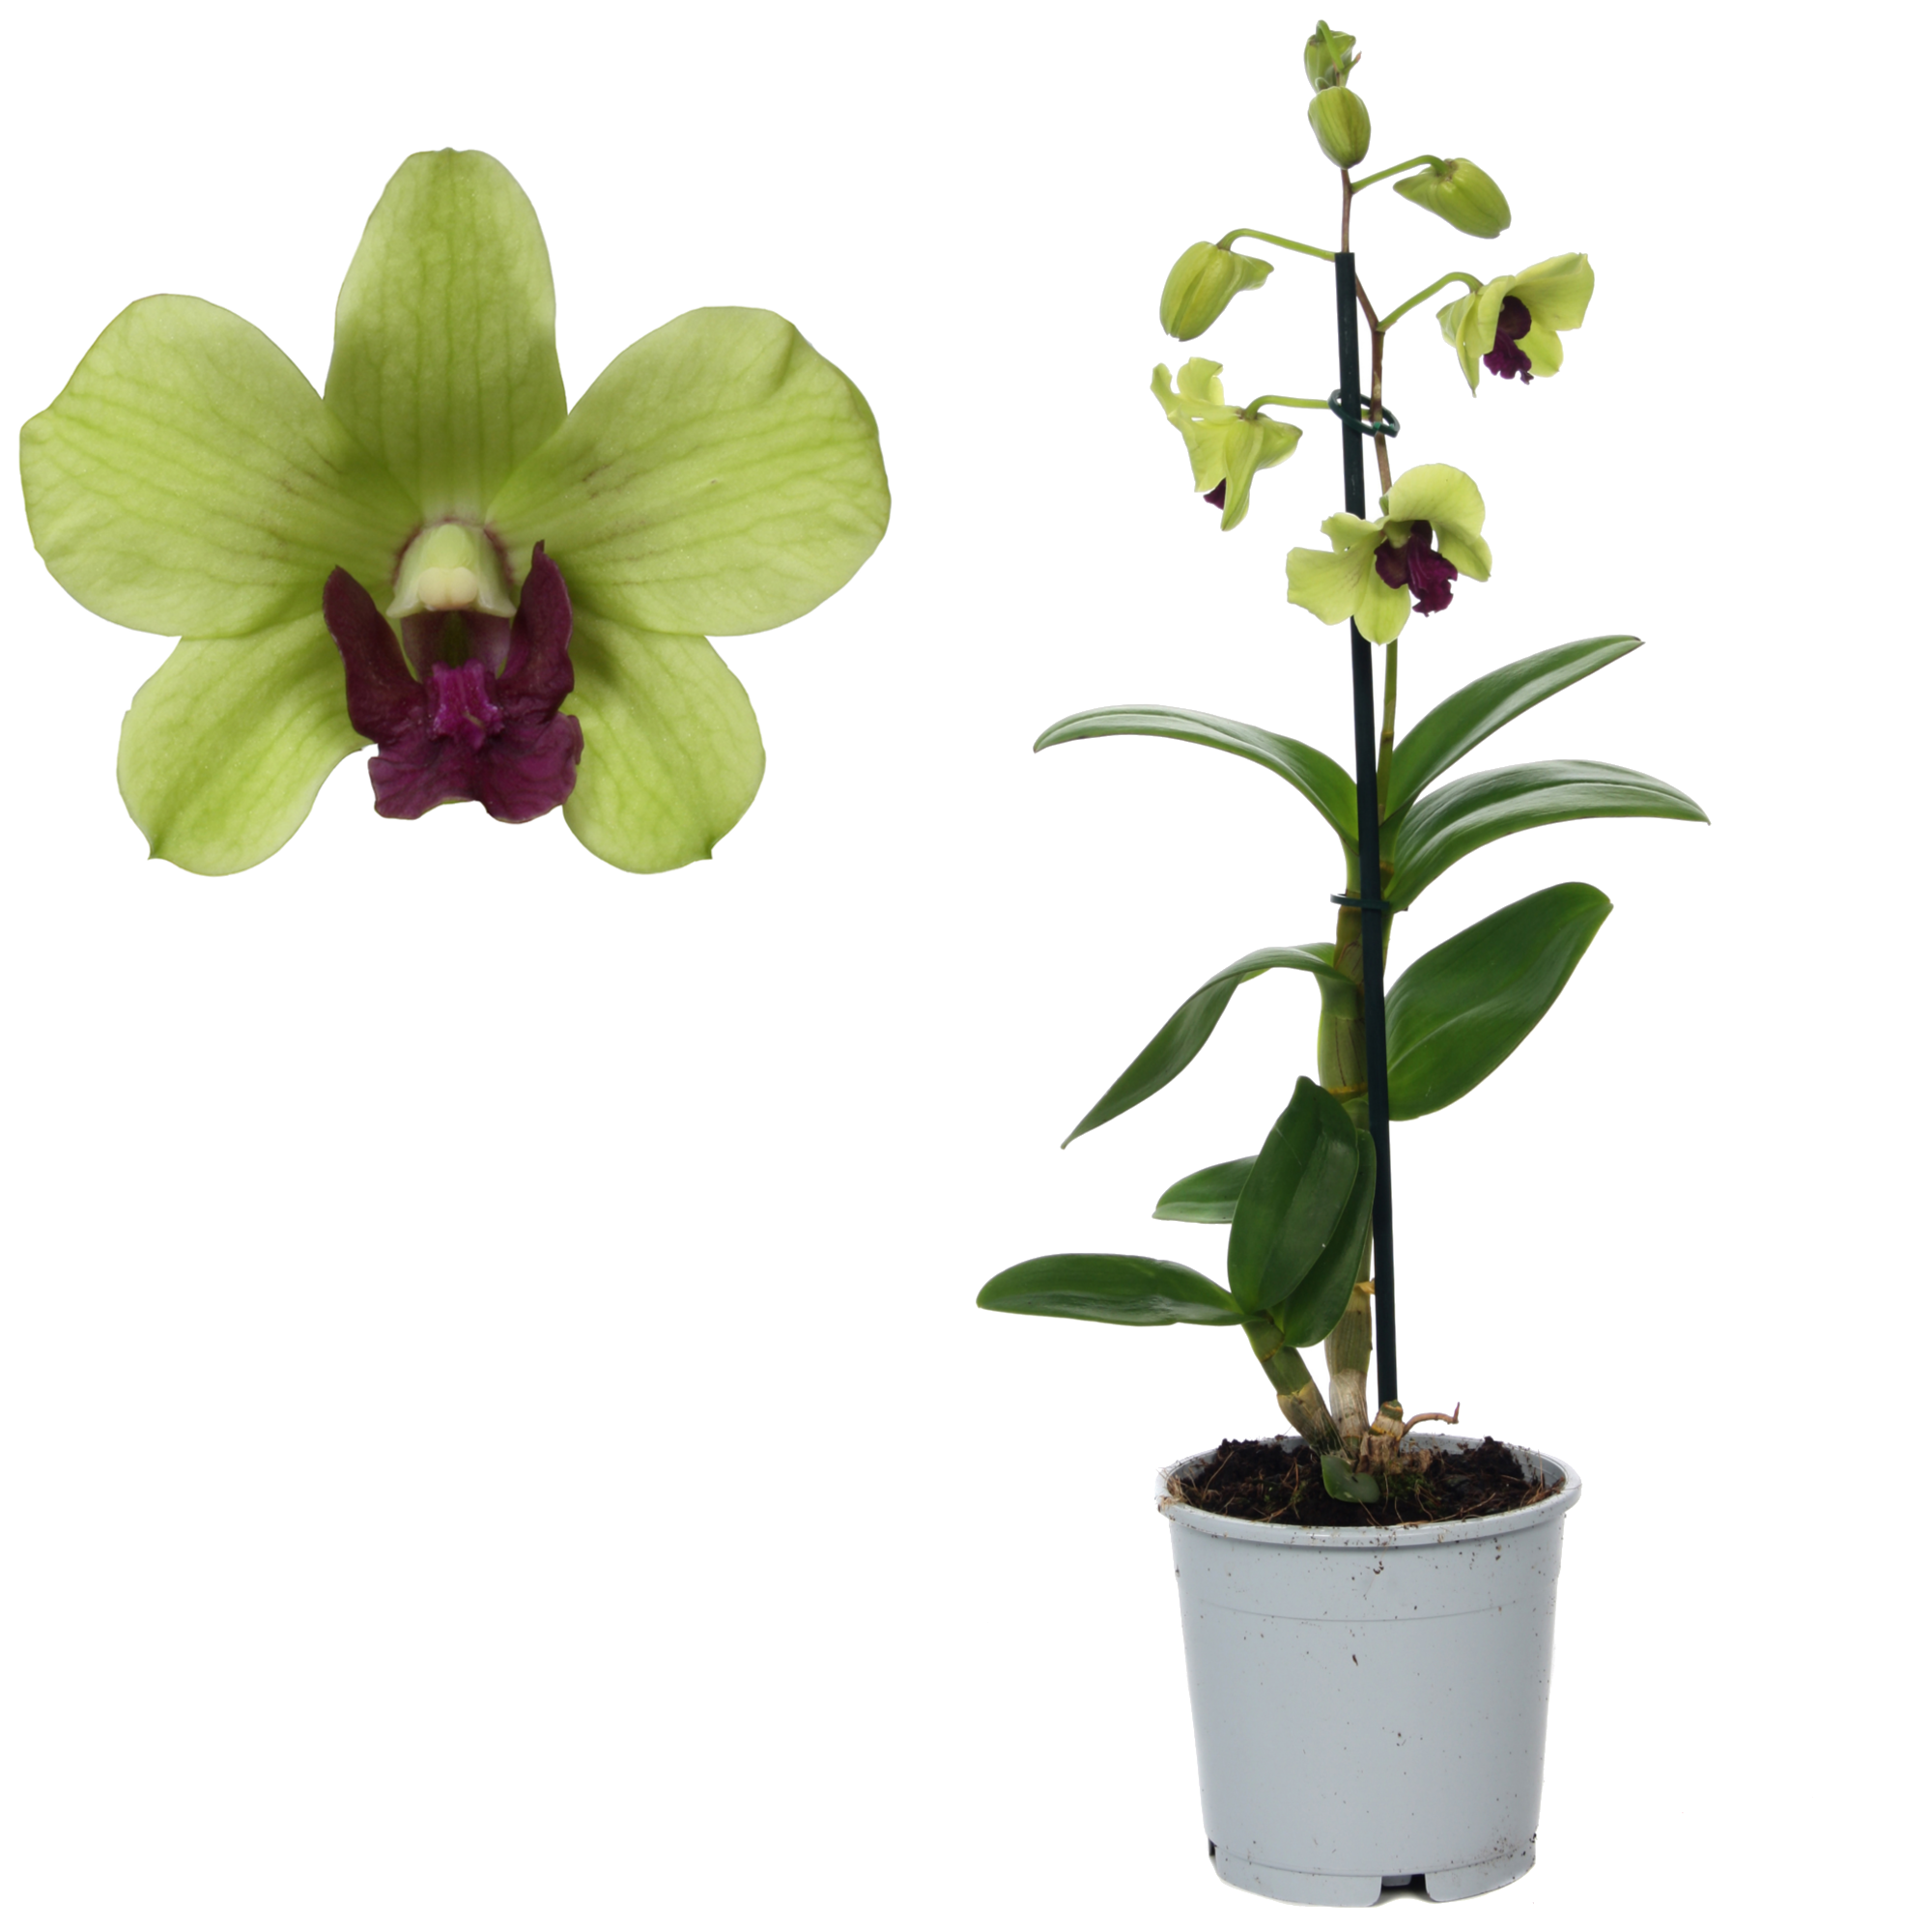 Wie oft und wie lange blühen Orchideen?